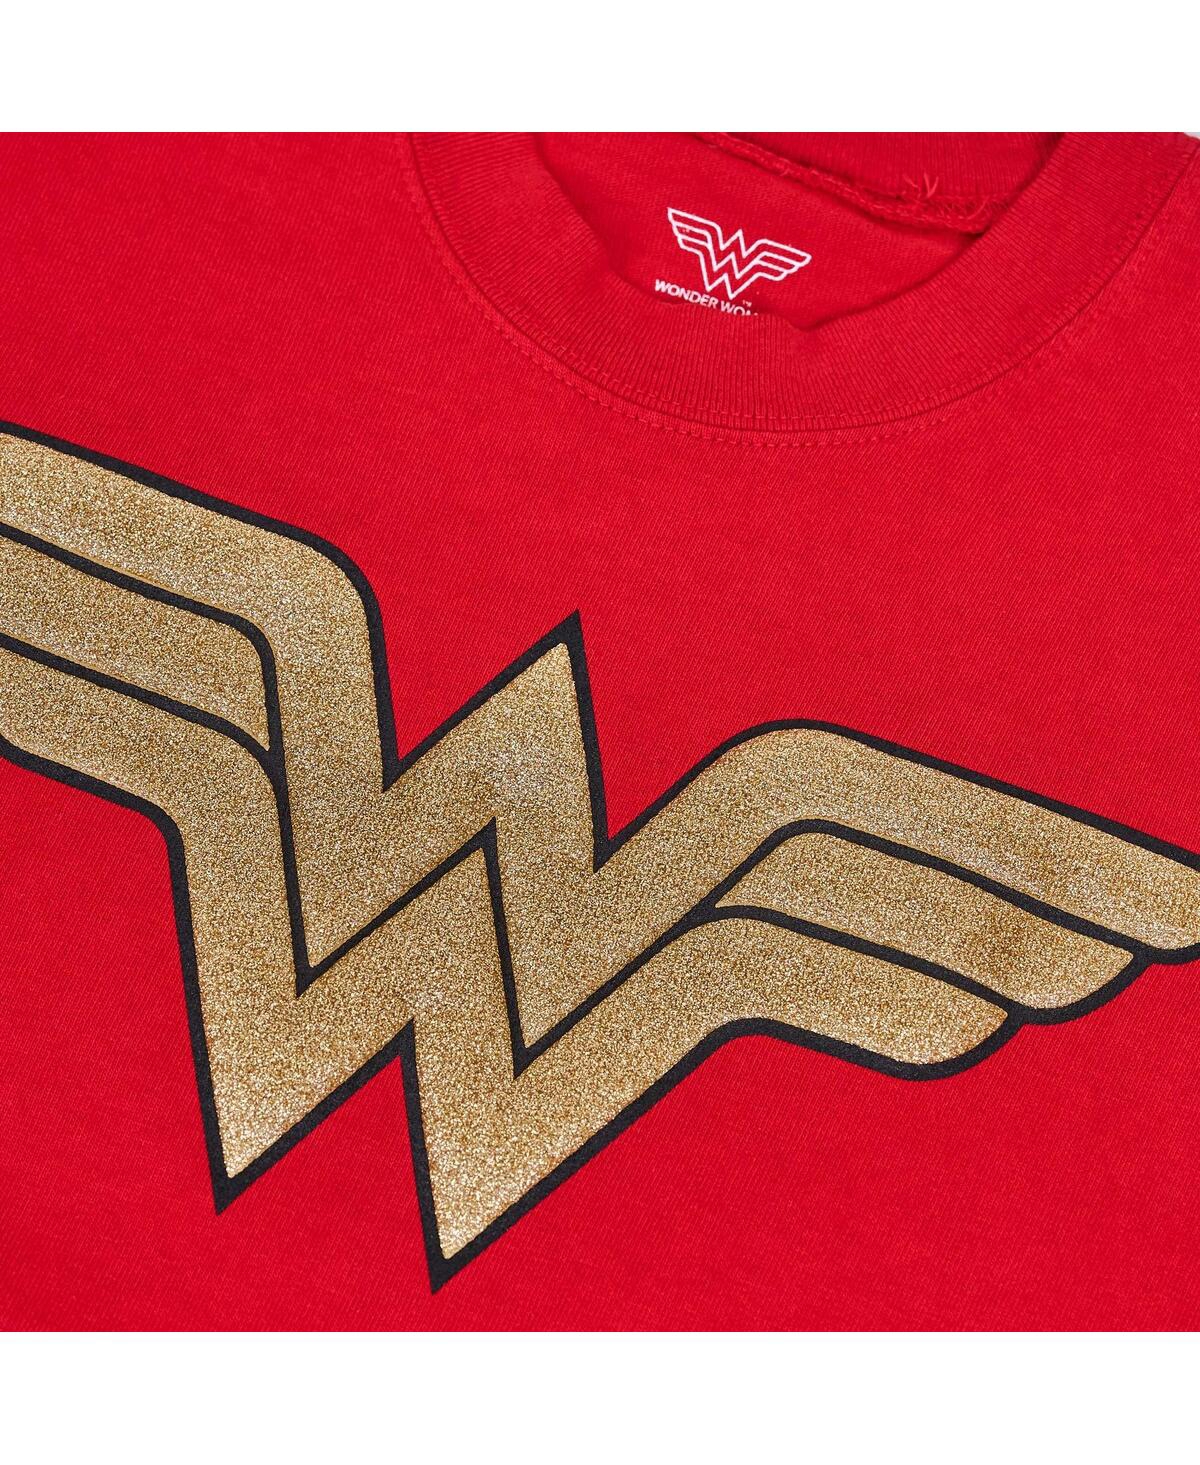 Shop Spirit Jersey Women's Red Wonder Woman Original Long Sleeve T-shirt